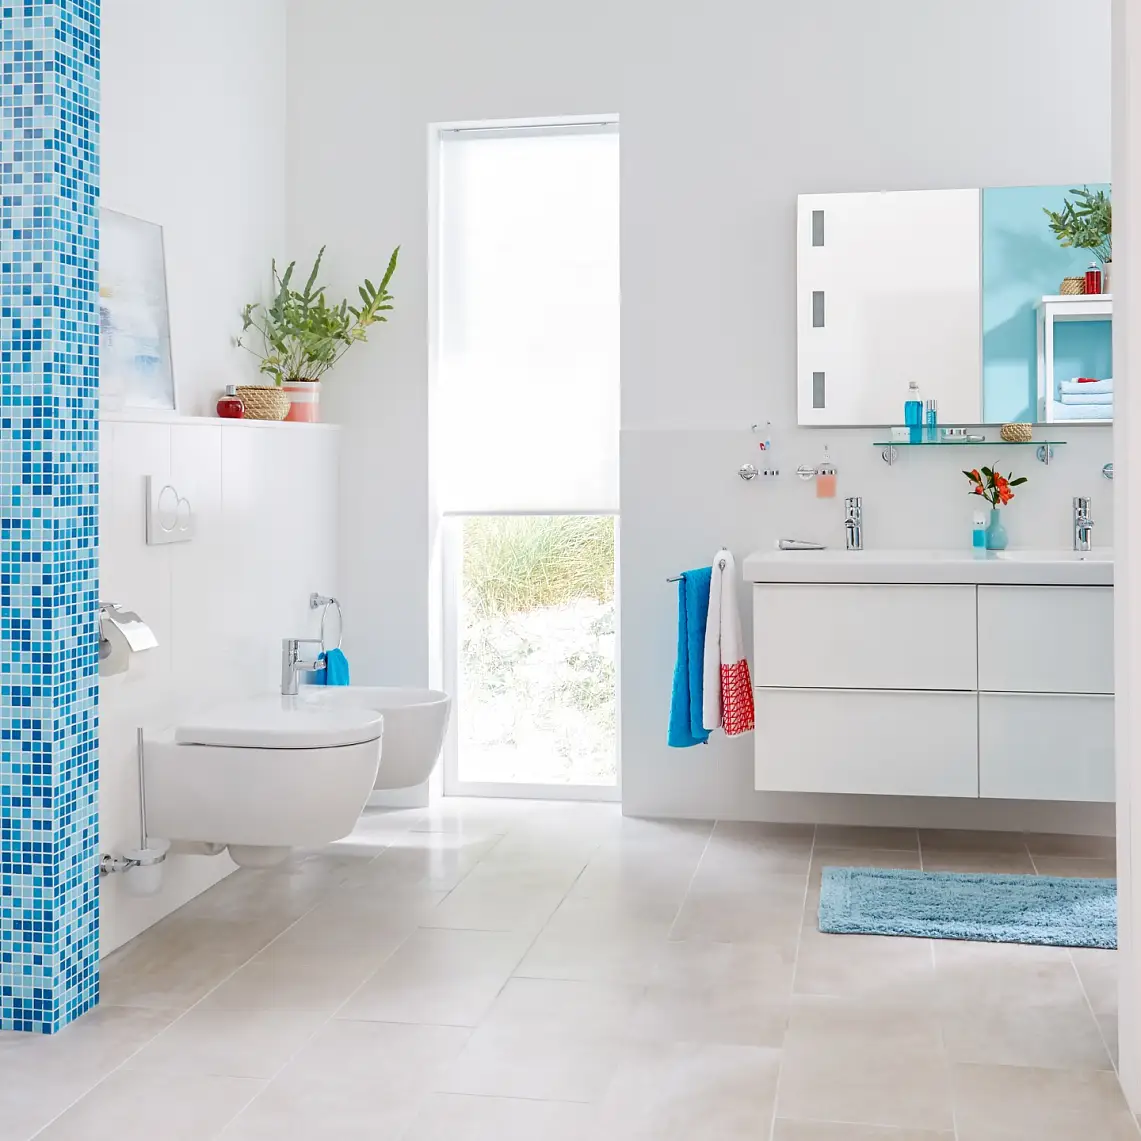 Un design fonctionnel pour une touche de simplicité dans votre salle de bains.